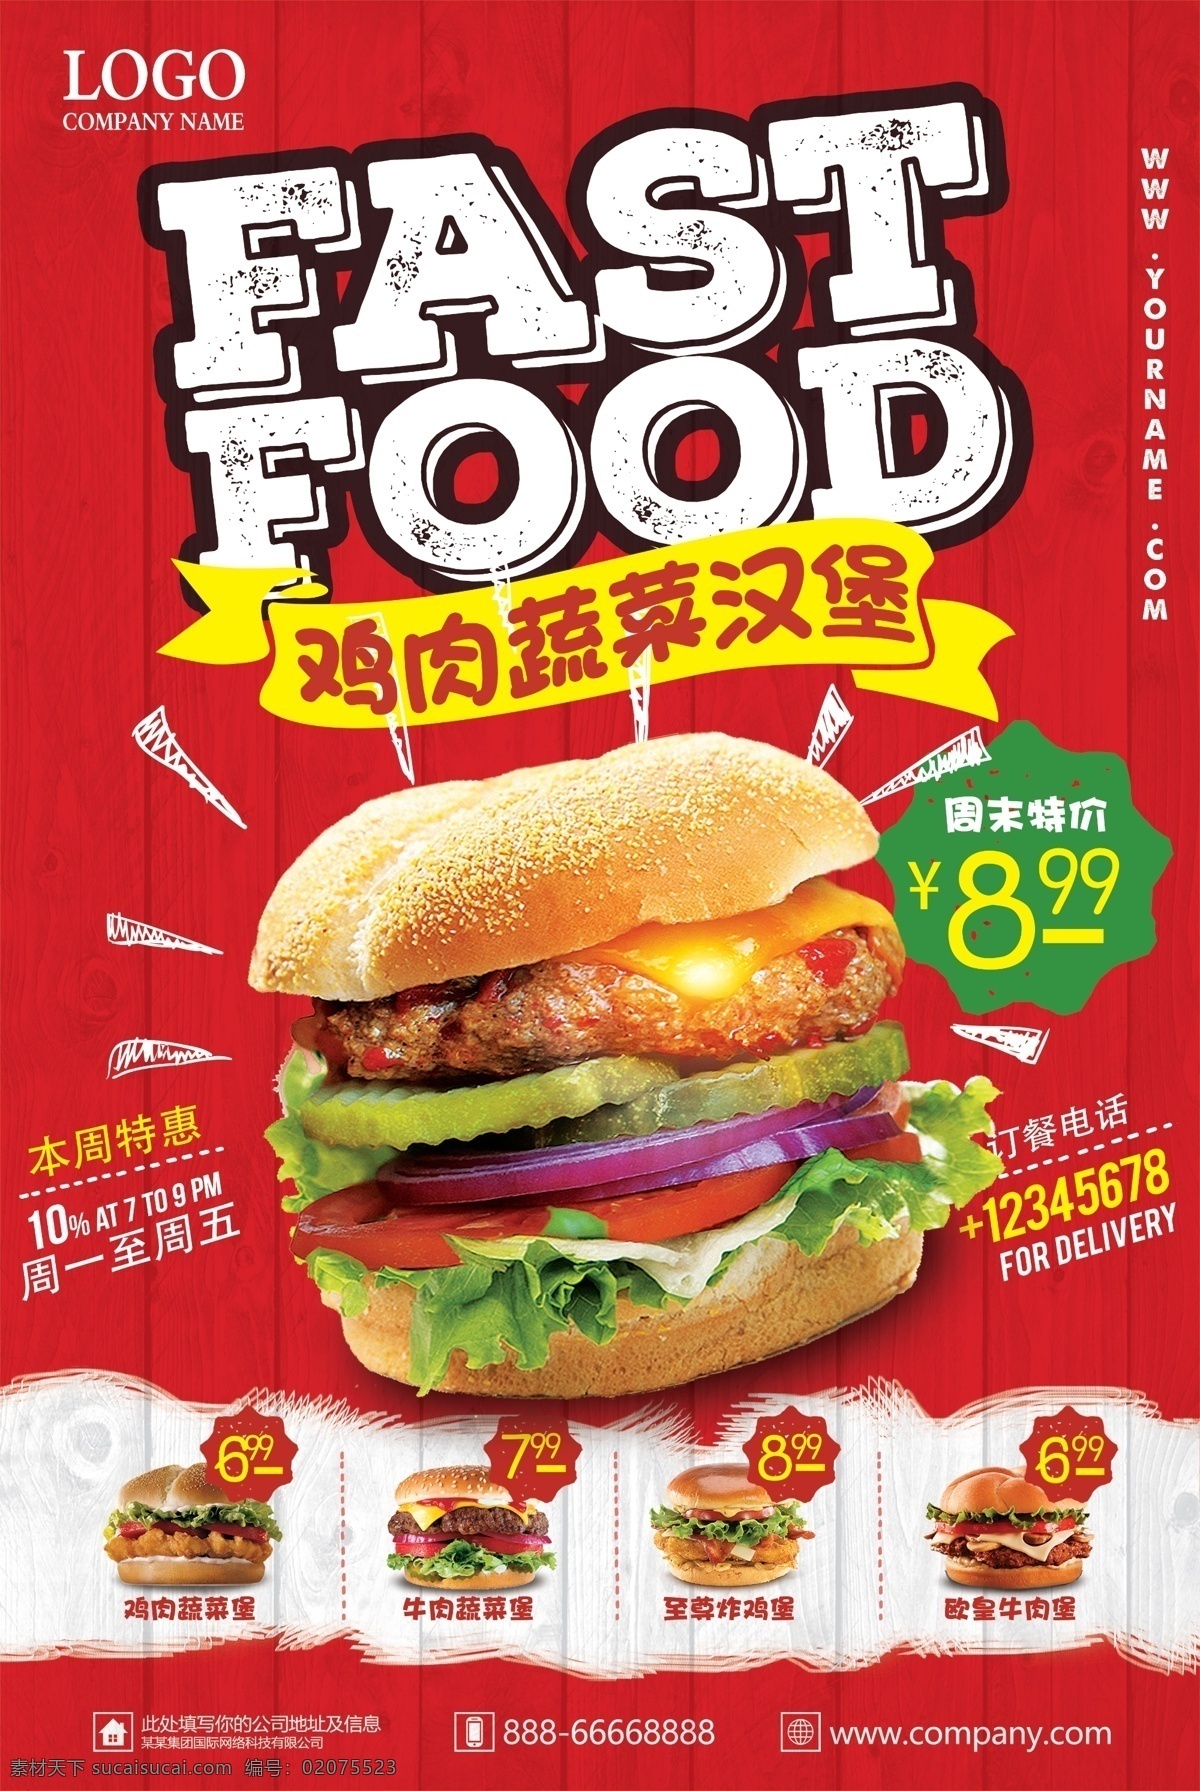 红色 鸡肉 蔬菜 汉堡 餐饮美食 pop 海报 海报背景 创意海报 时尚海报 海报素材 海报模板 卡通海报 模板下载 创意背景 设计创意海报 海报图片 免费 免费模板 免费素材 平面素材